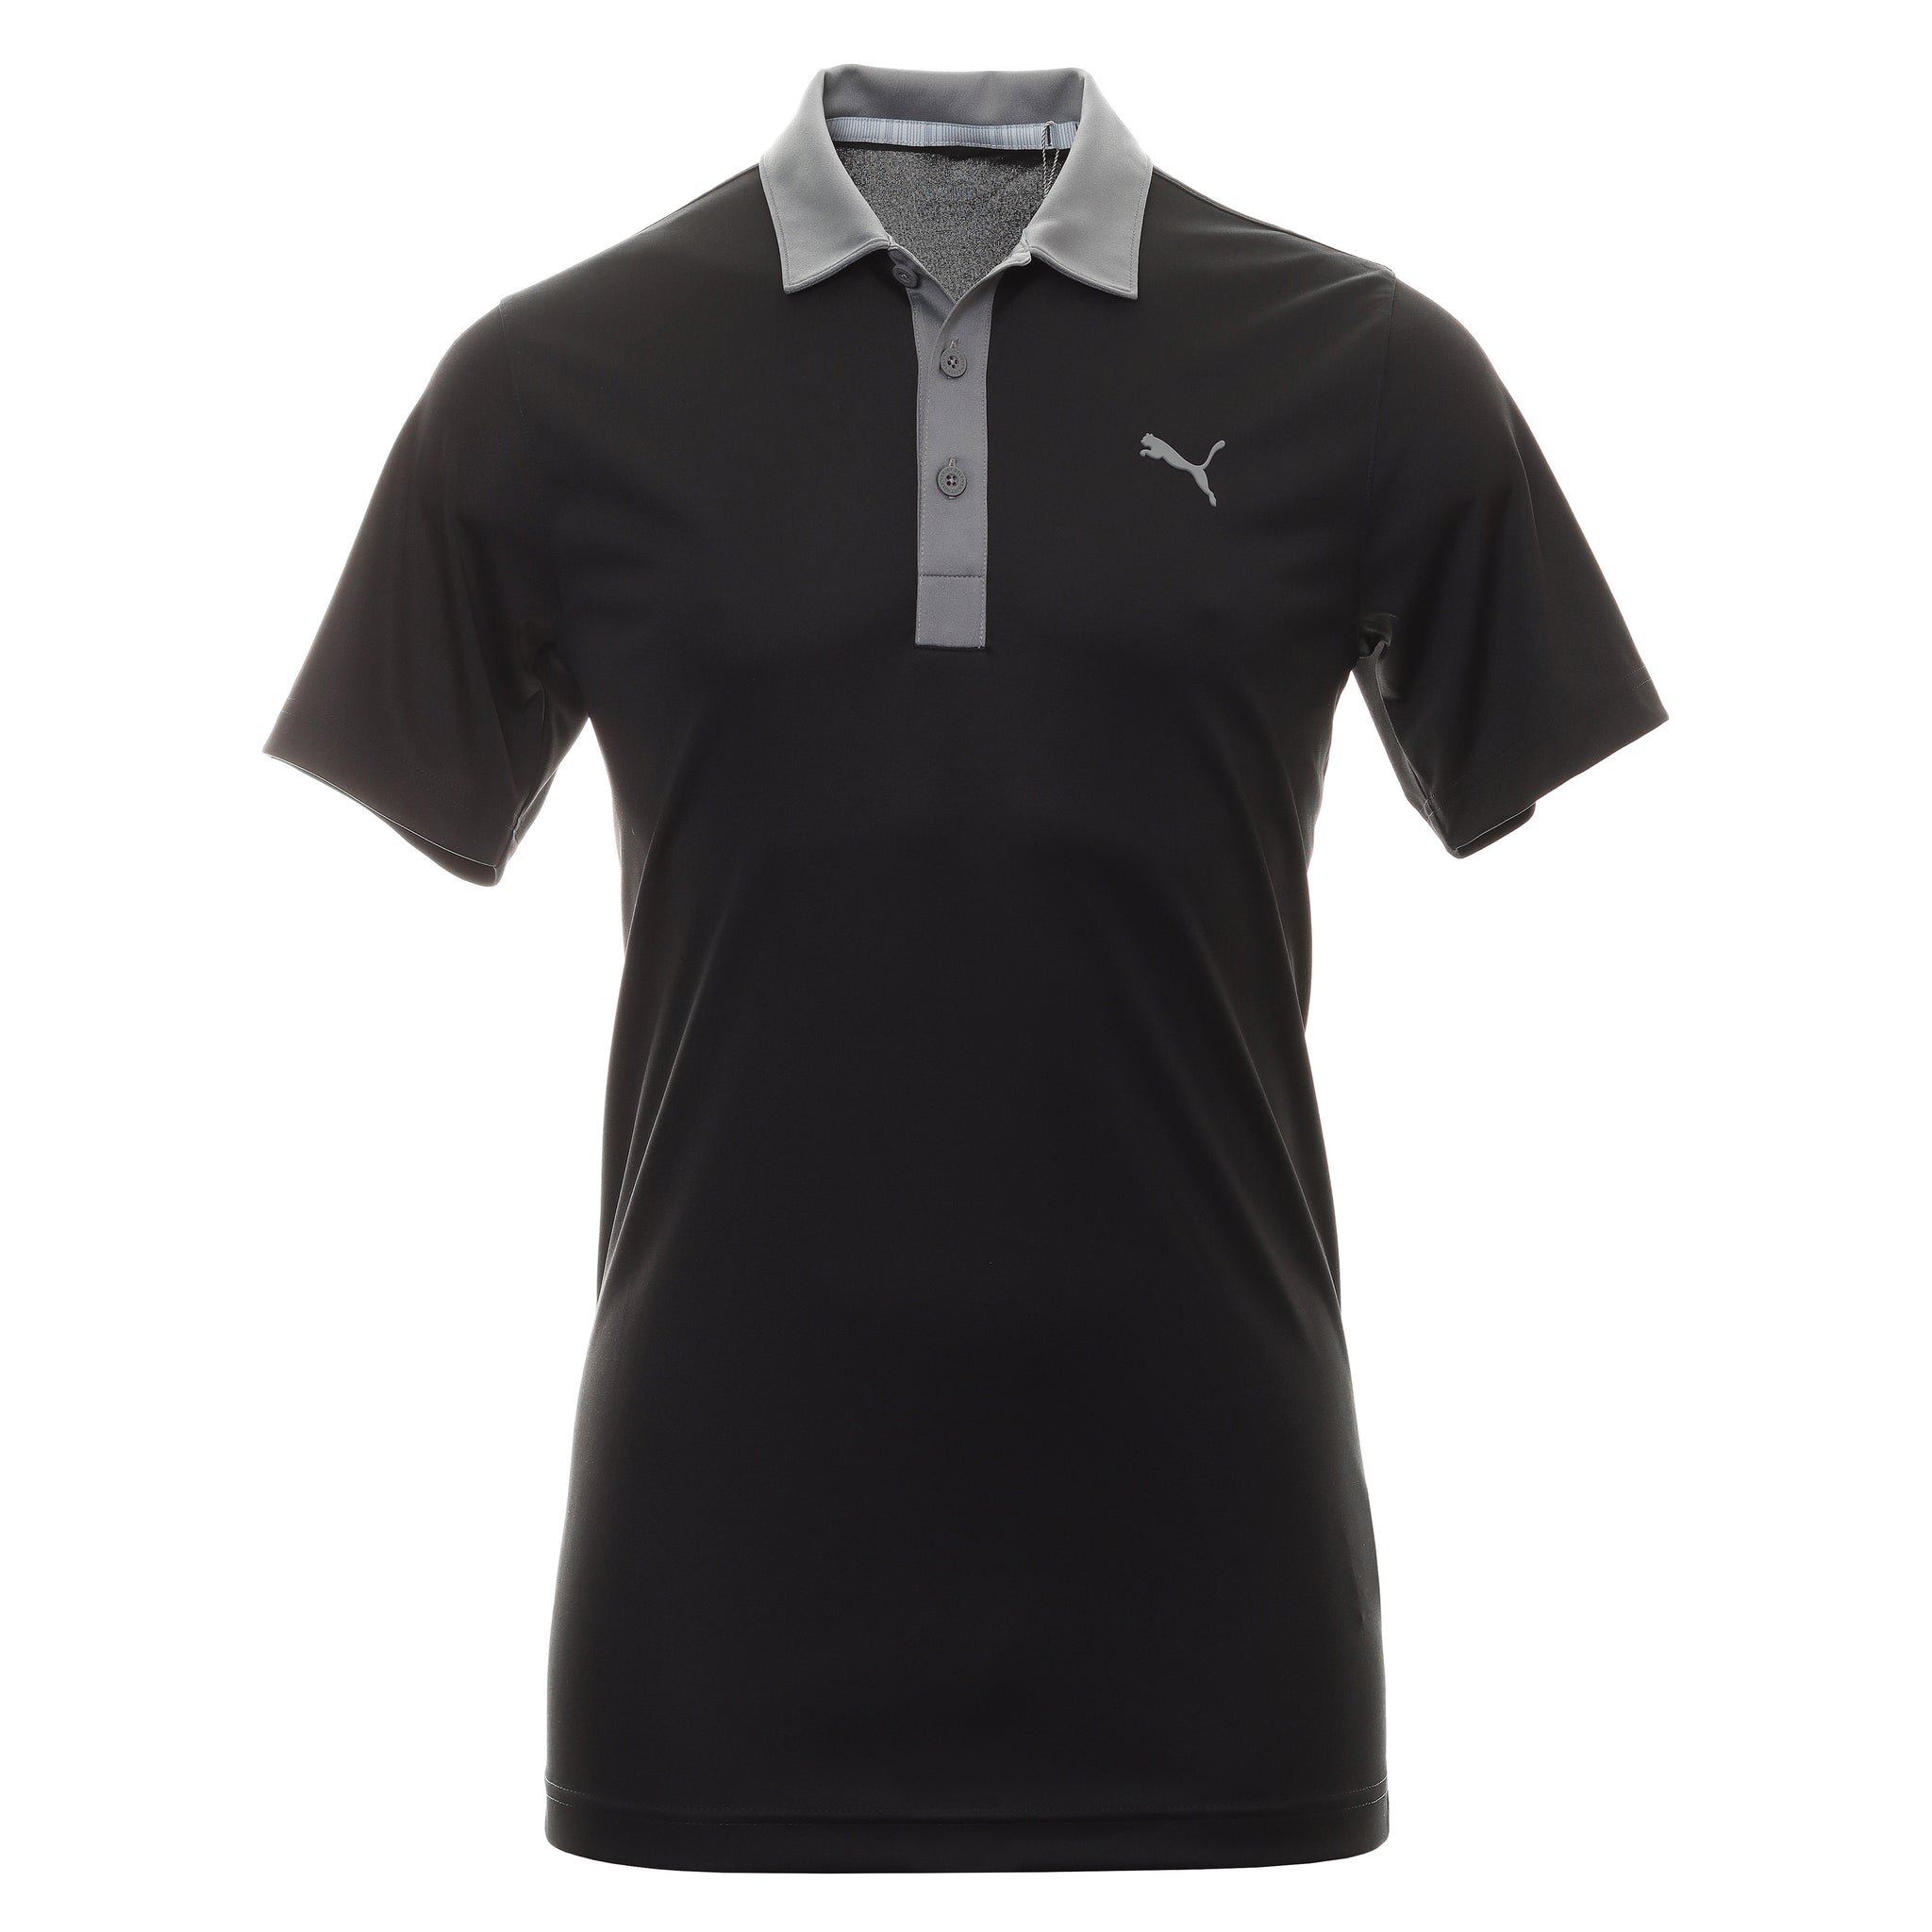 puma-golf-gamer-polo-shirt-599118-puma-black-quiet-shade-02